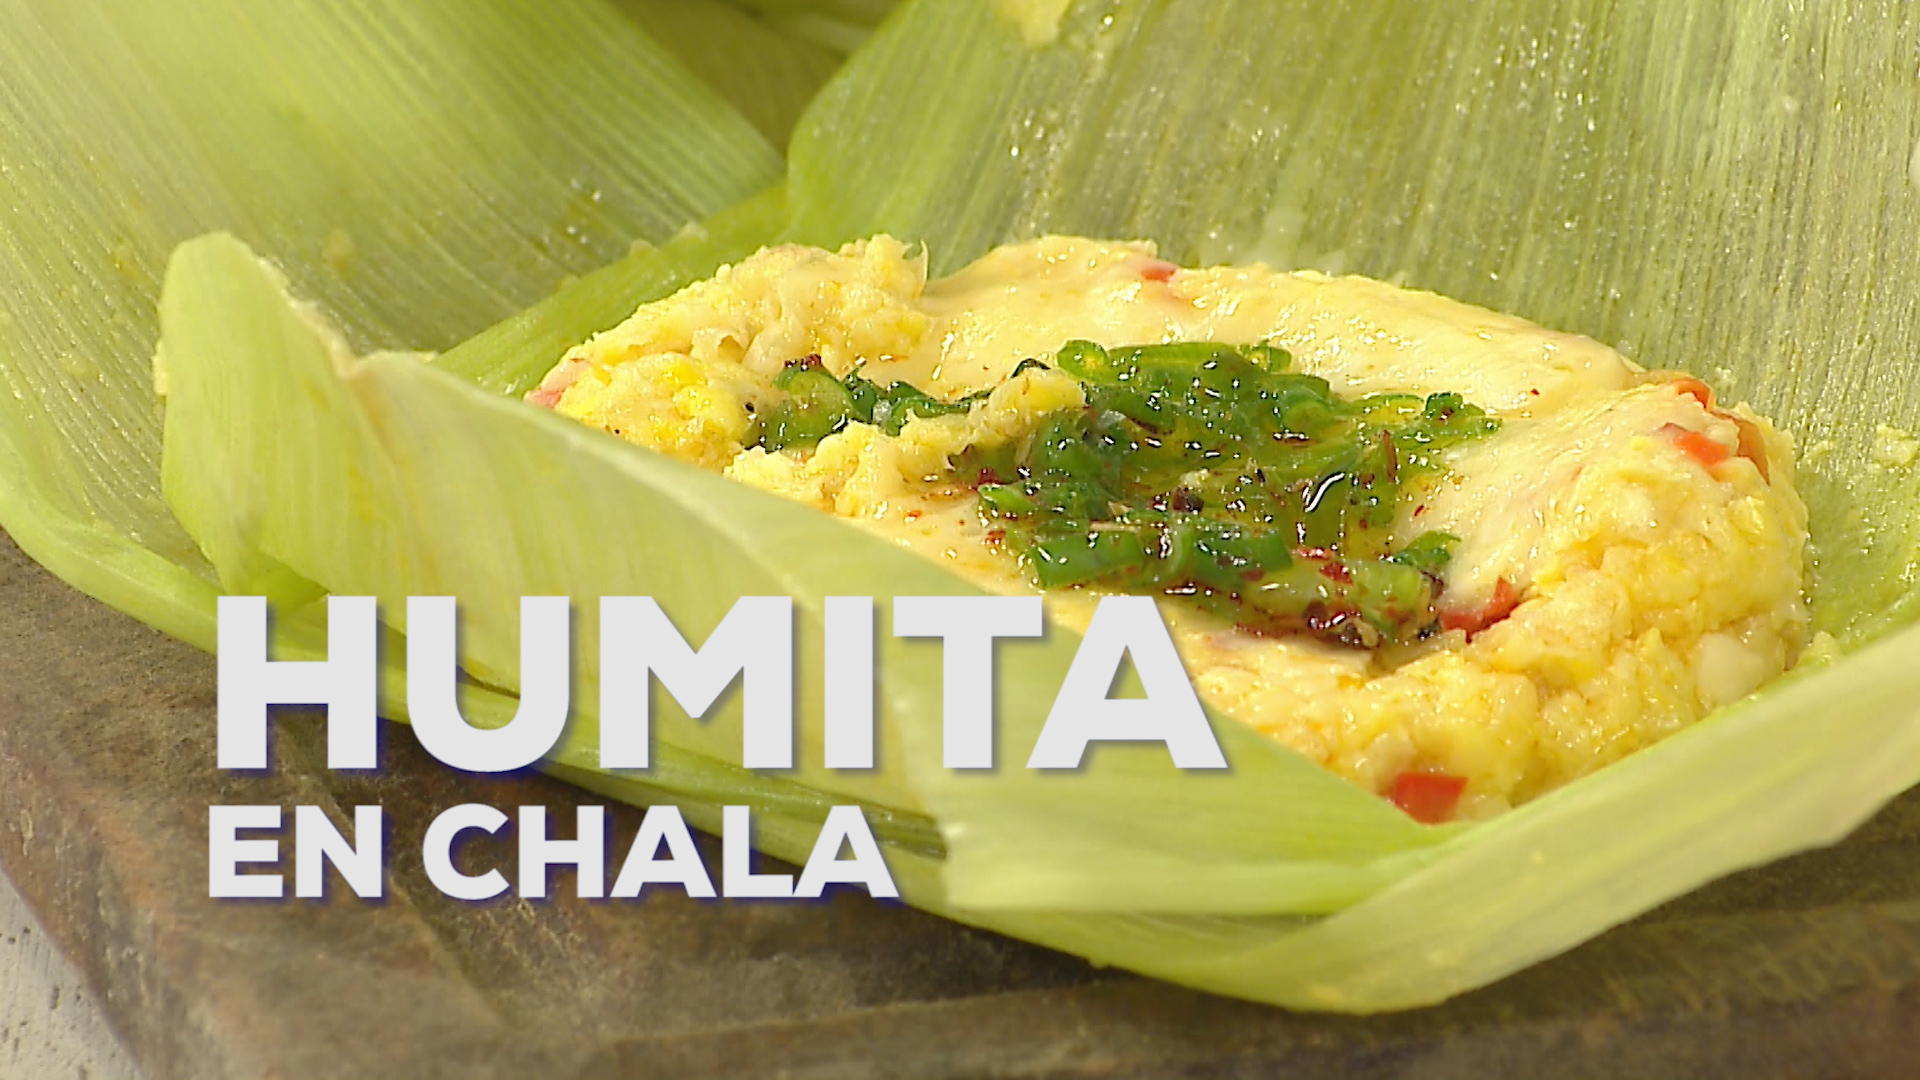 Humita en Chala, menú patrio para la semana del 25 de mayo - Canal 9  Televida Mendoza